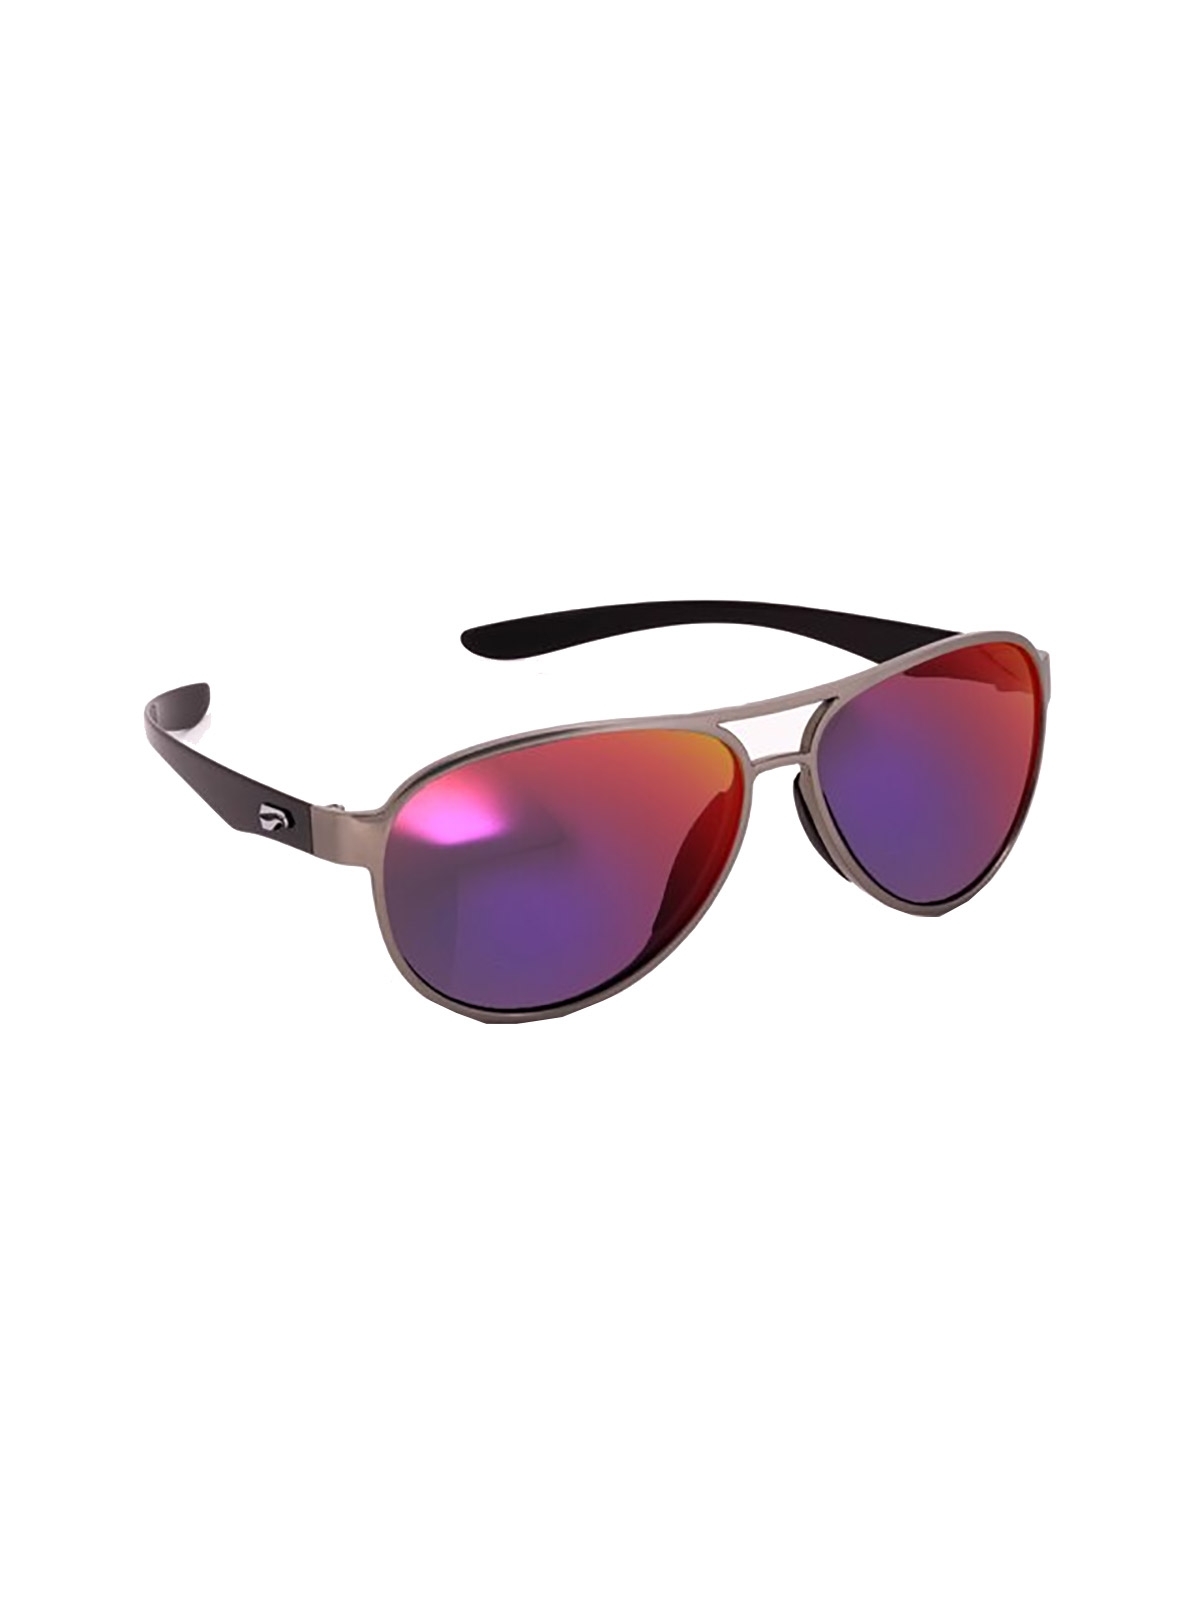 Flying Eyes Sonnenbrille Kestrel Aviator - Rahmen silberfarben mit schwarzen Bügeln, Linsen Sunset (verspiegelt)